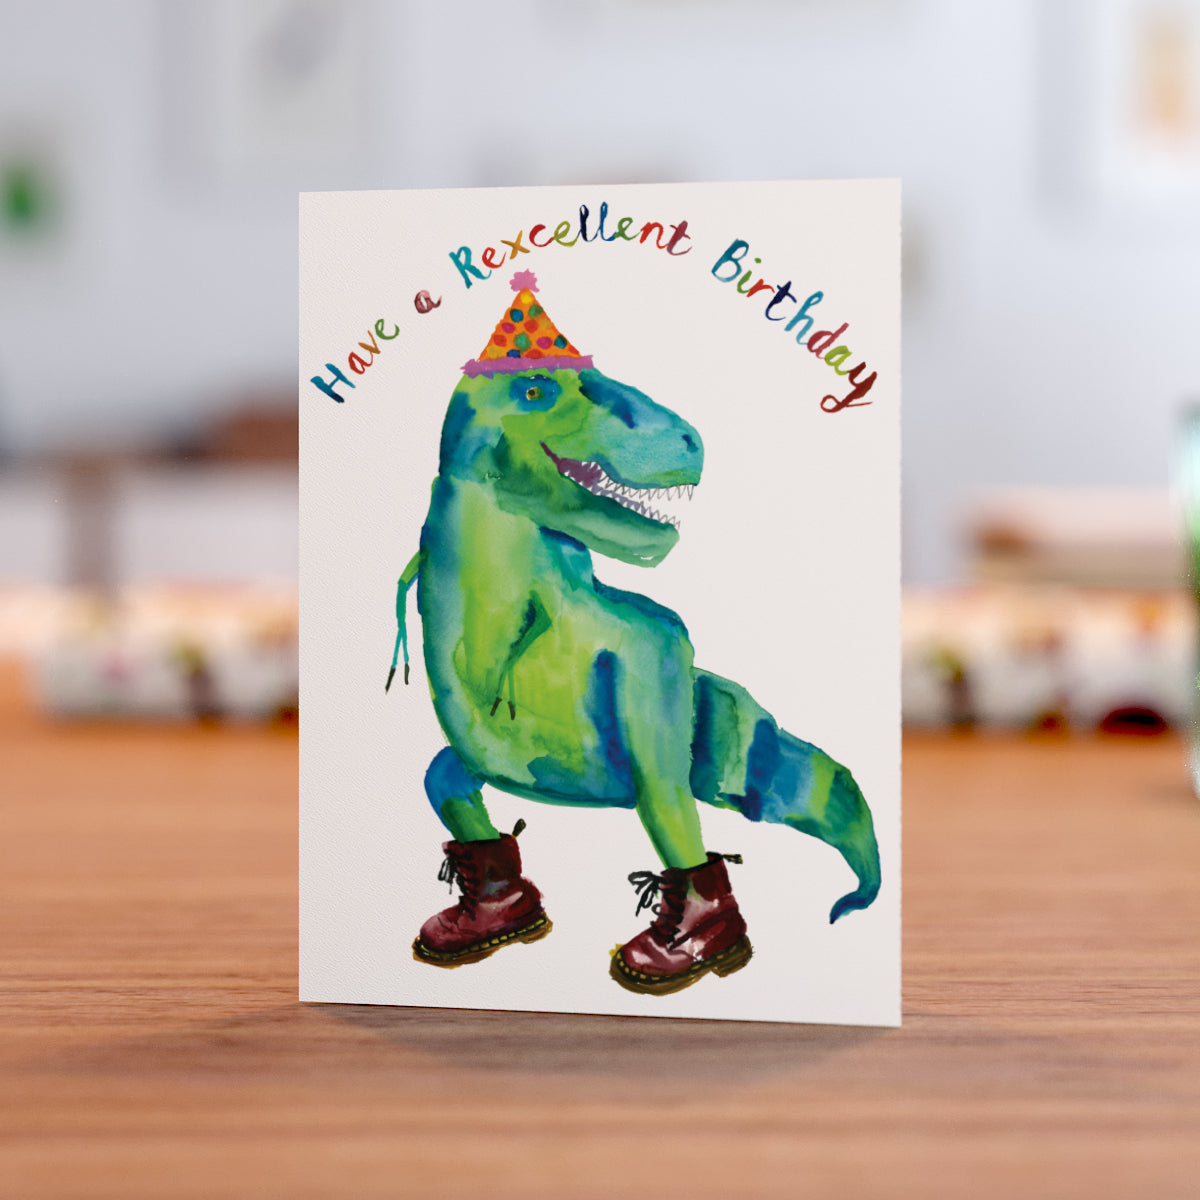 Rexcellent Birthday card